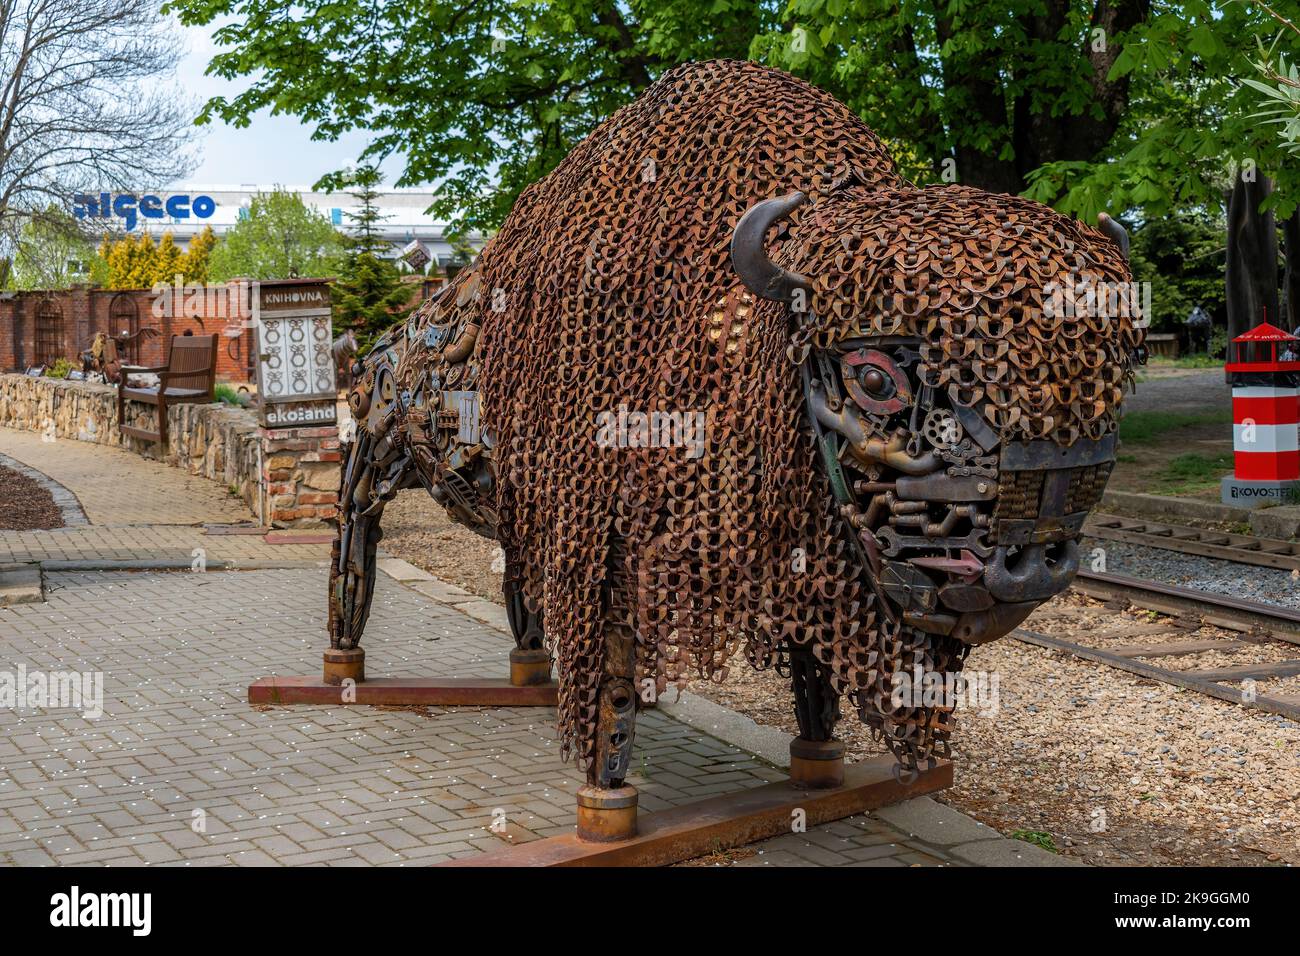 KOVOZOO exposition originale de déchets métalliques, de technologie et d'objets rétro. Statue d'un bison fait de déchets métalliques Banque D'Images